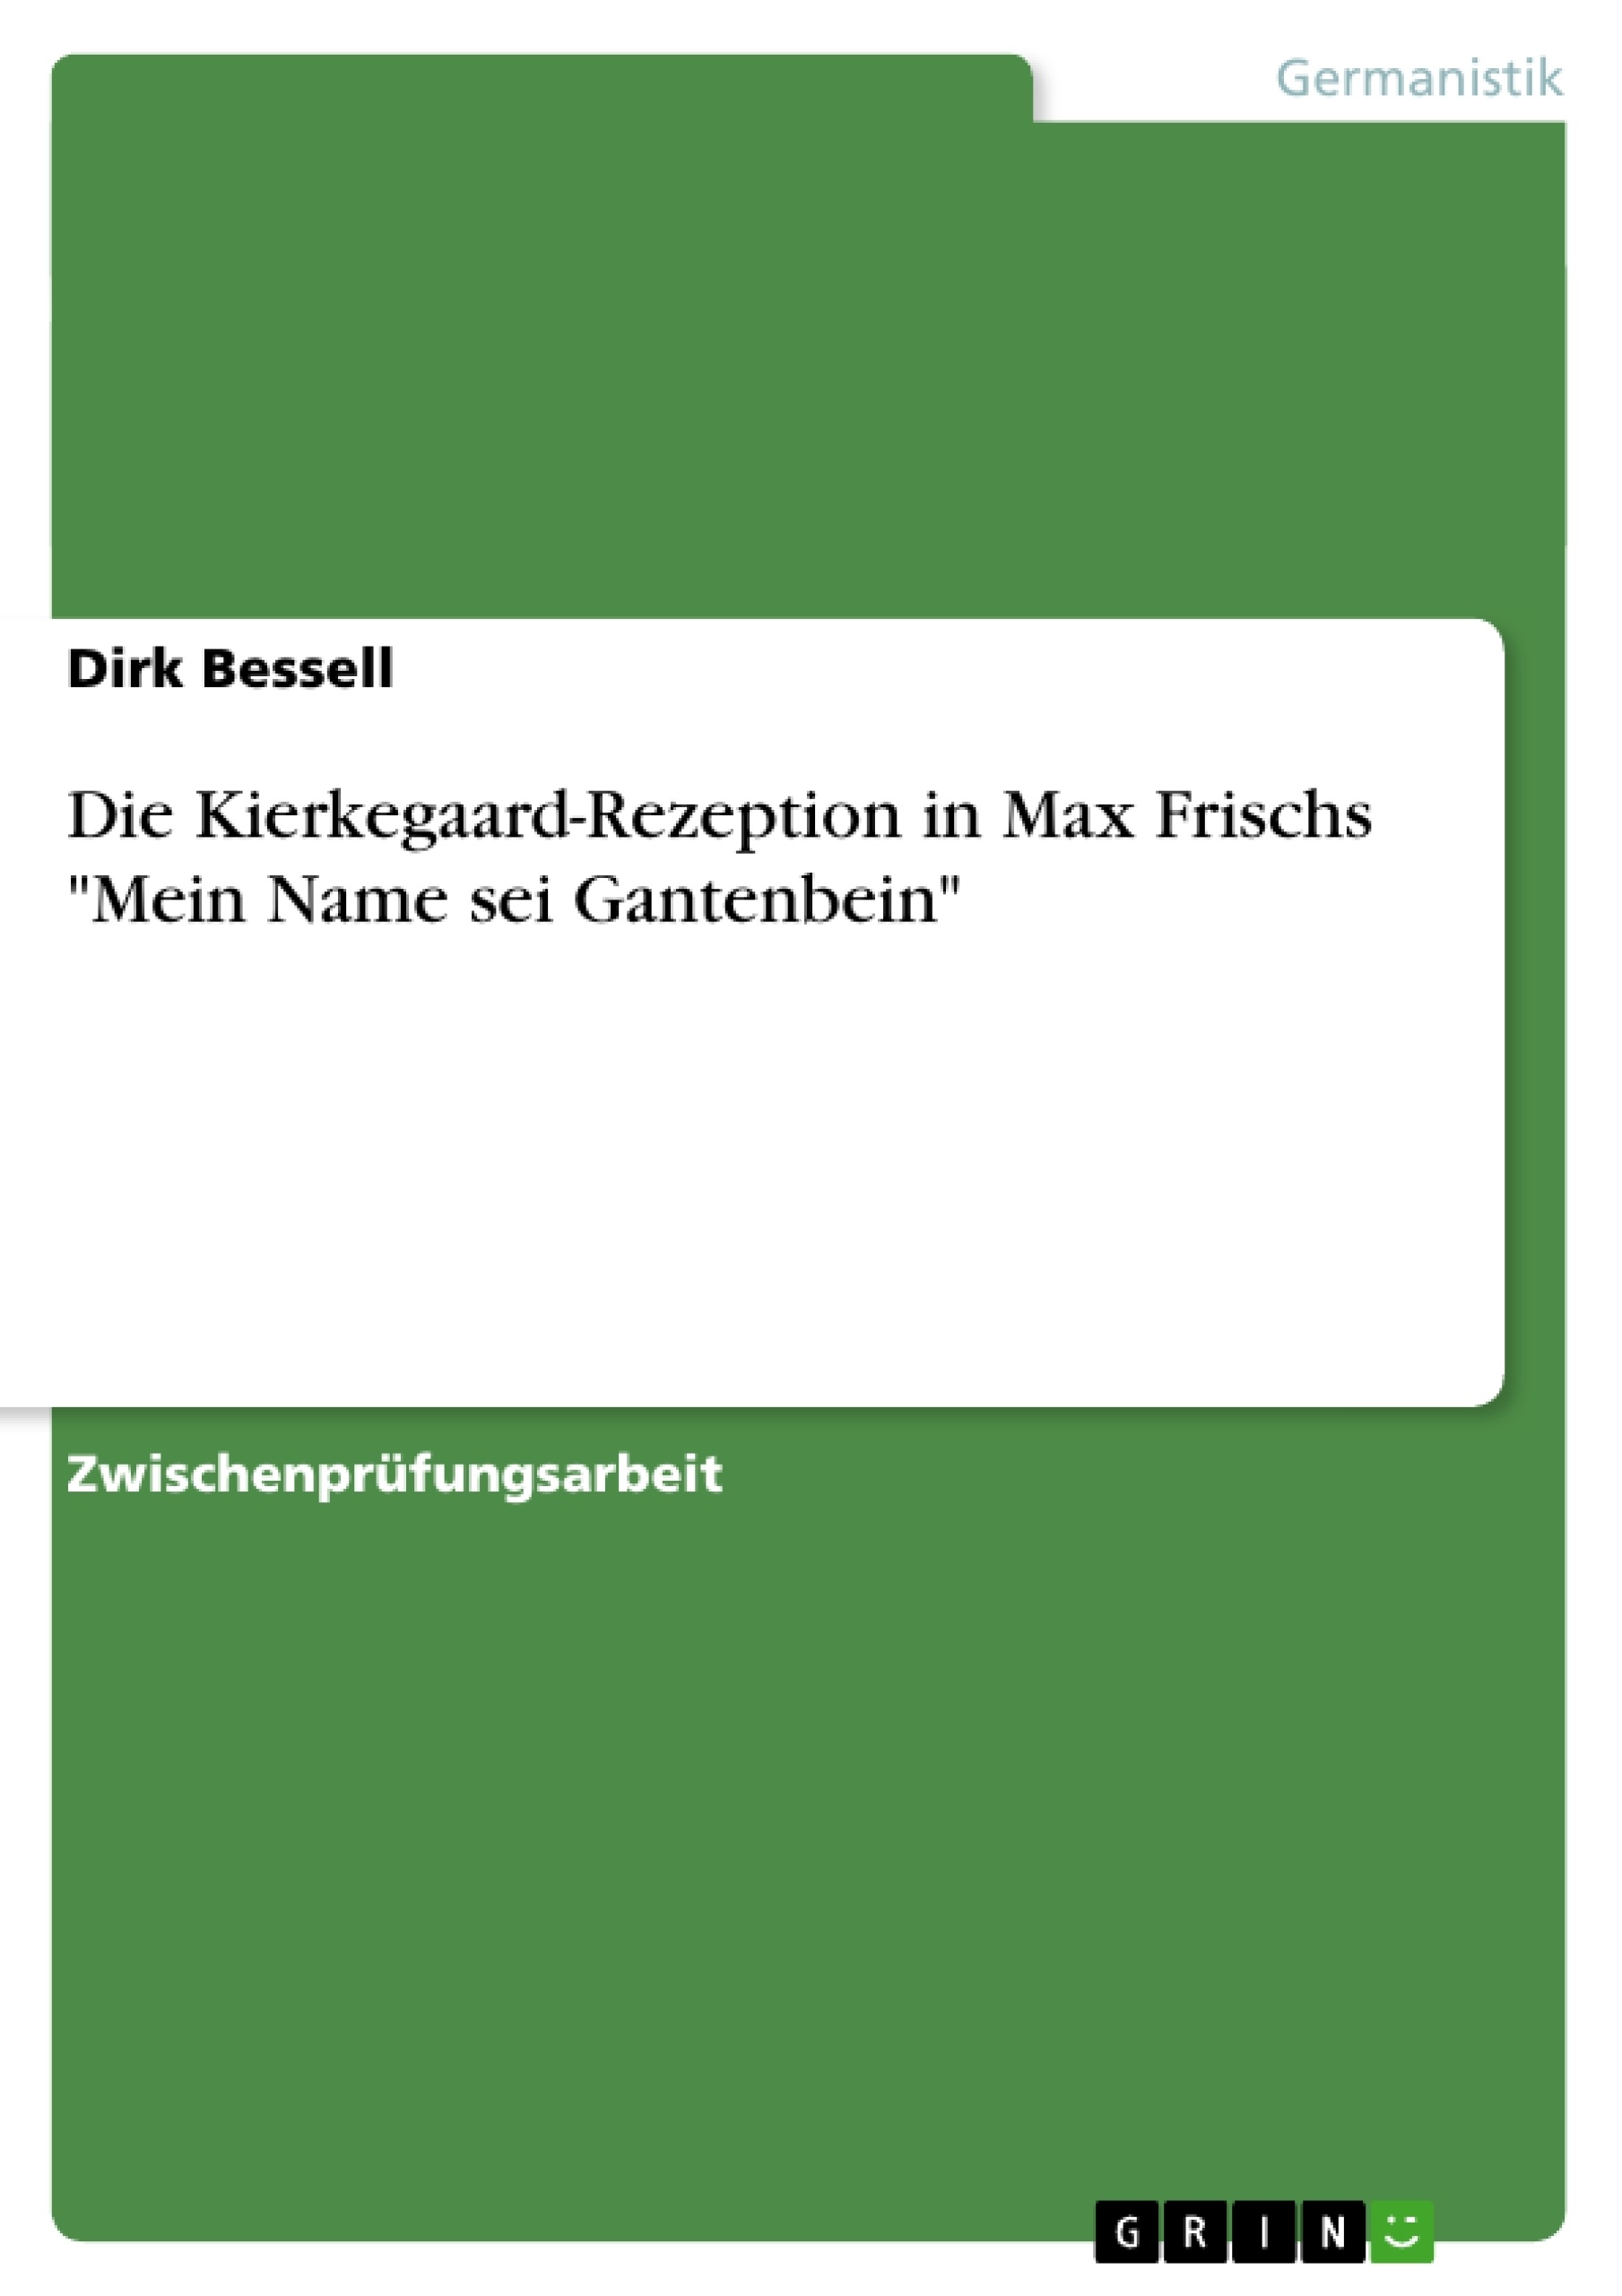 Titre: Die Kierkegaard-Rezeption in Max Frischs "Mein Name sei Gantenbein"